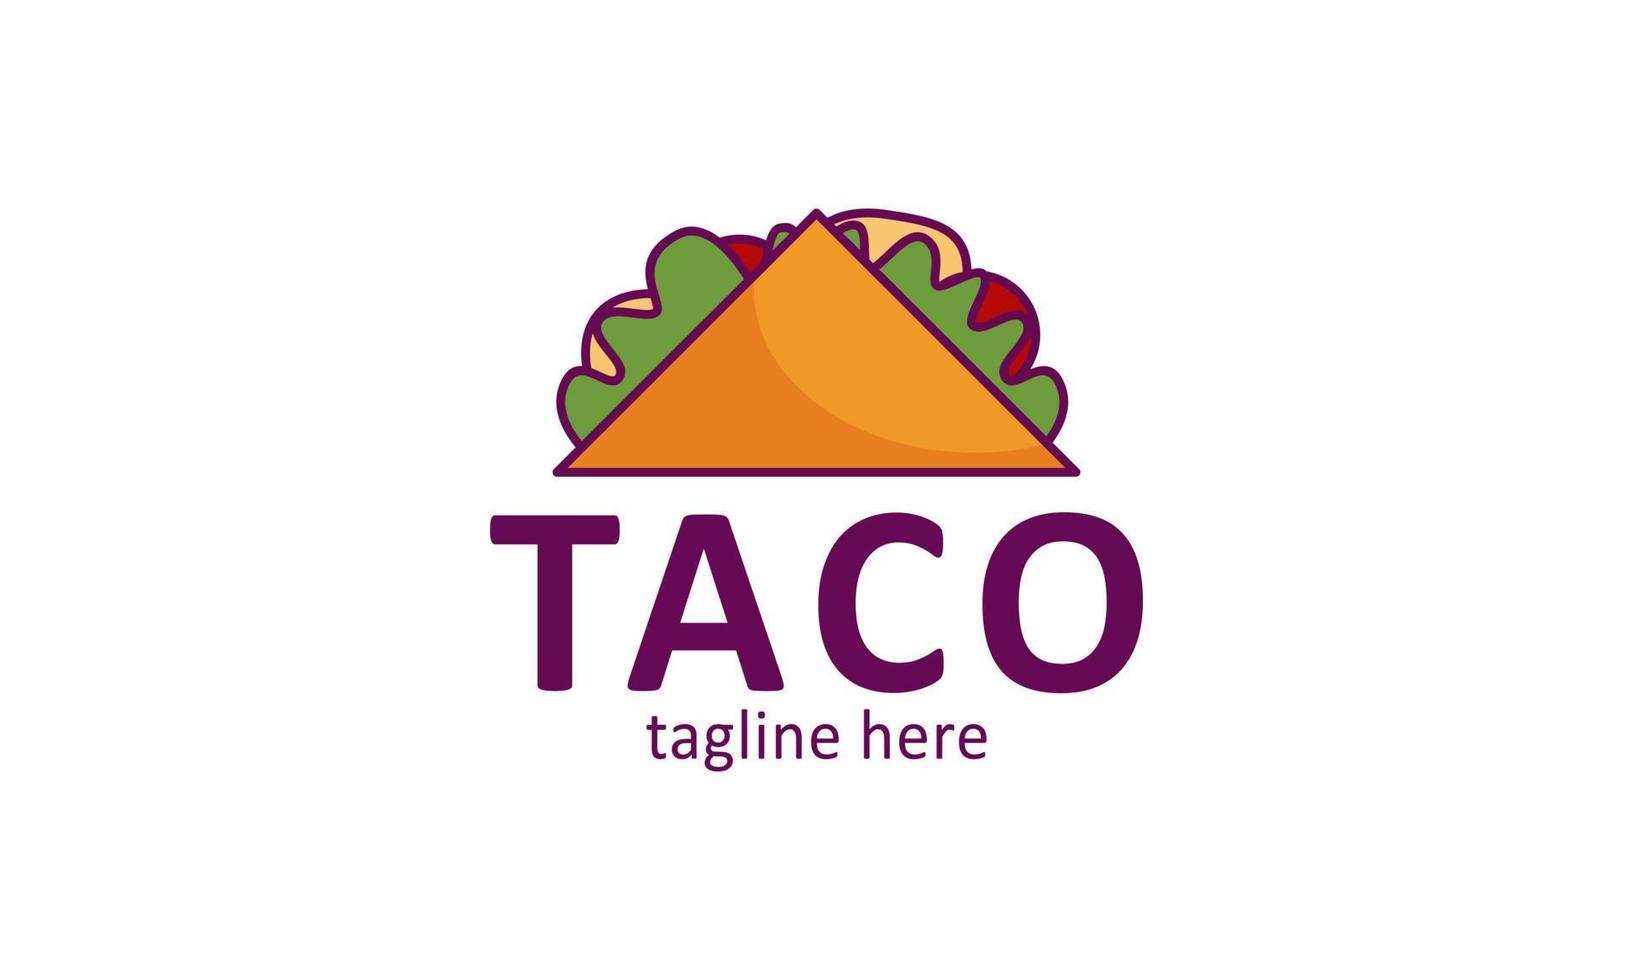 taco maskot tecknad serie vektor ikon illustration. söt taco unge karaktär med klocka